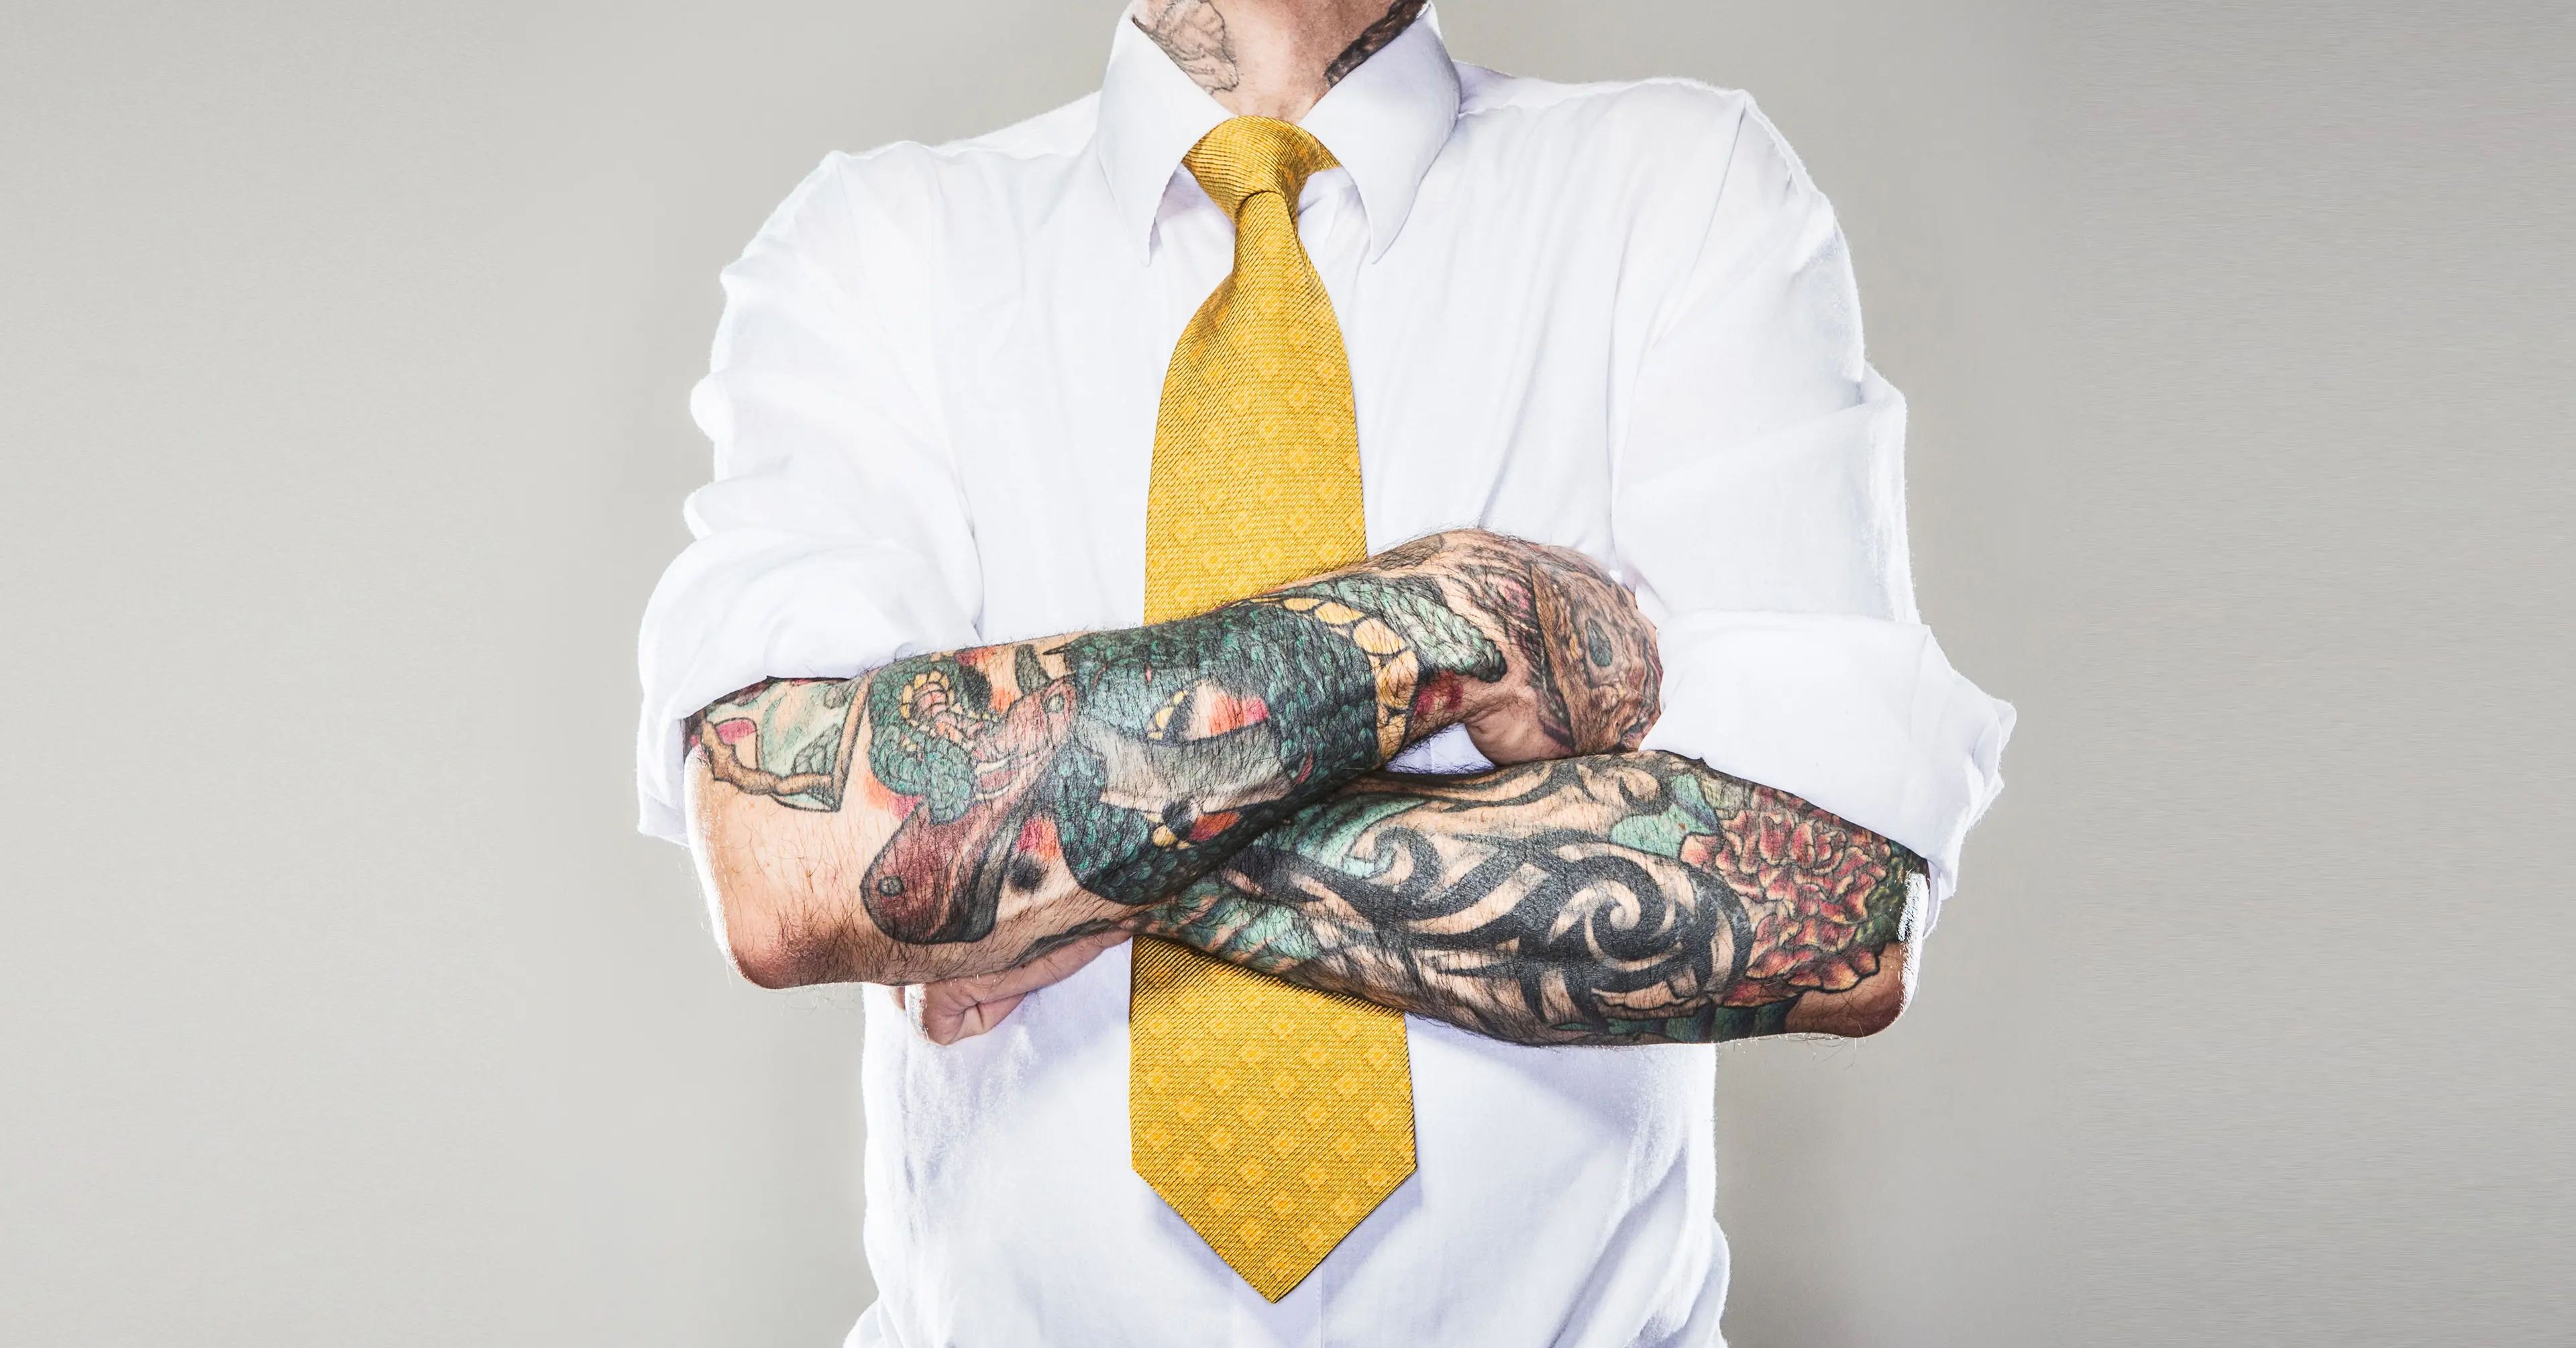 Mann med tatoveringer i skjorte og slips